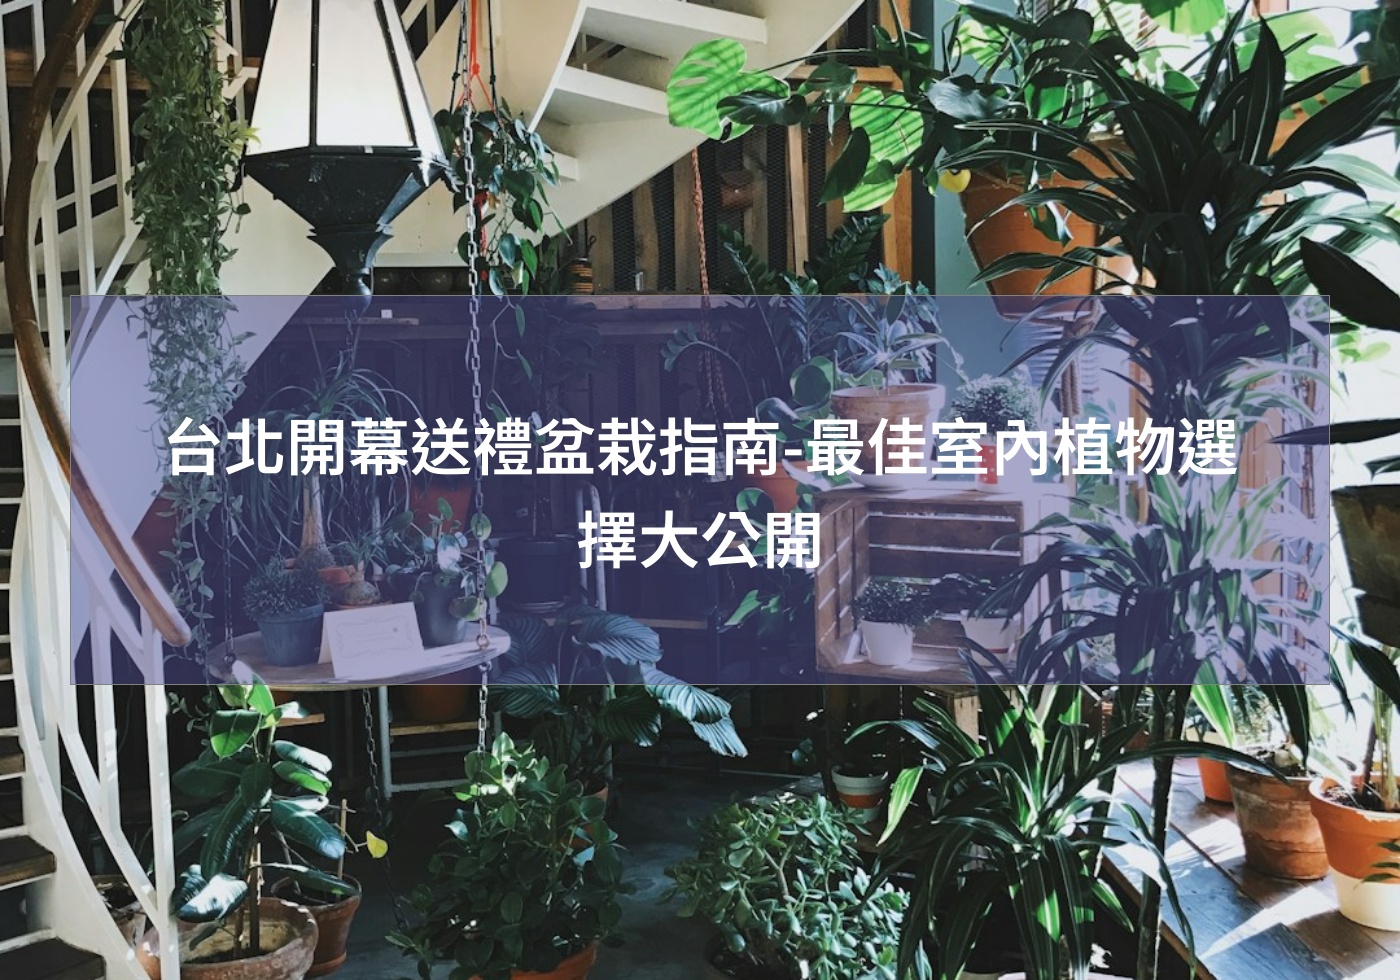 您目前正在查看 台北開幕送禮盆栽指南-最佳室內植物選擇大公開